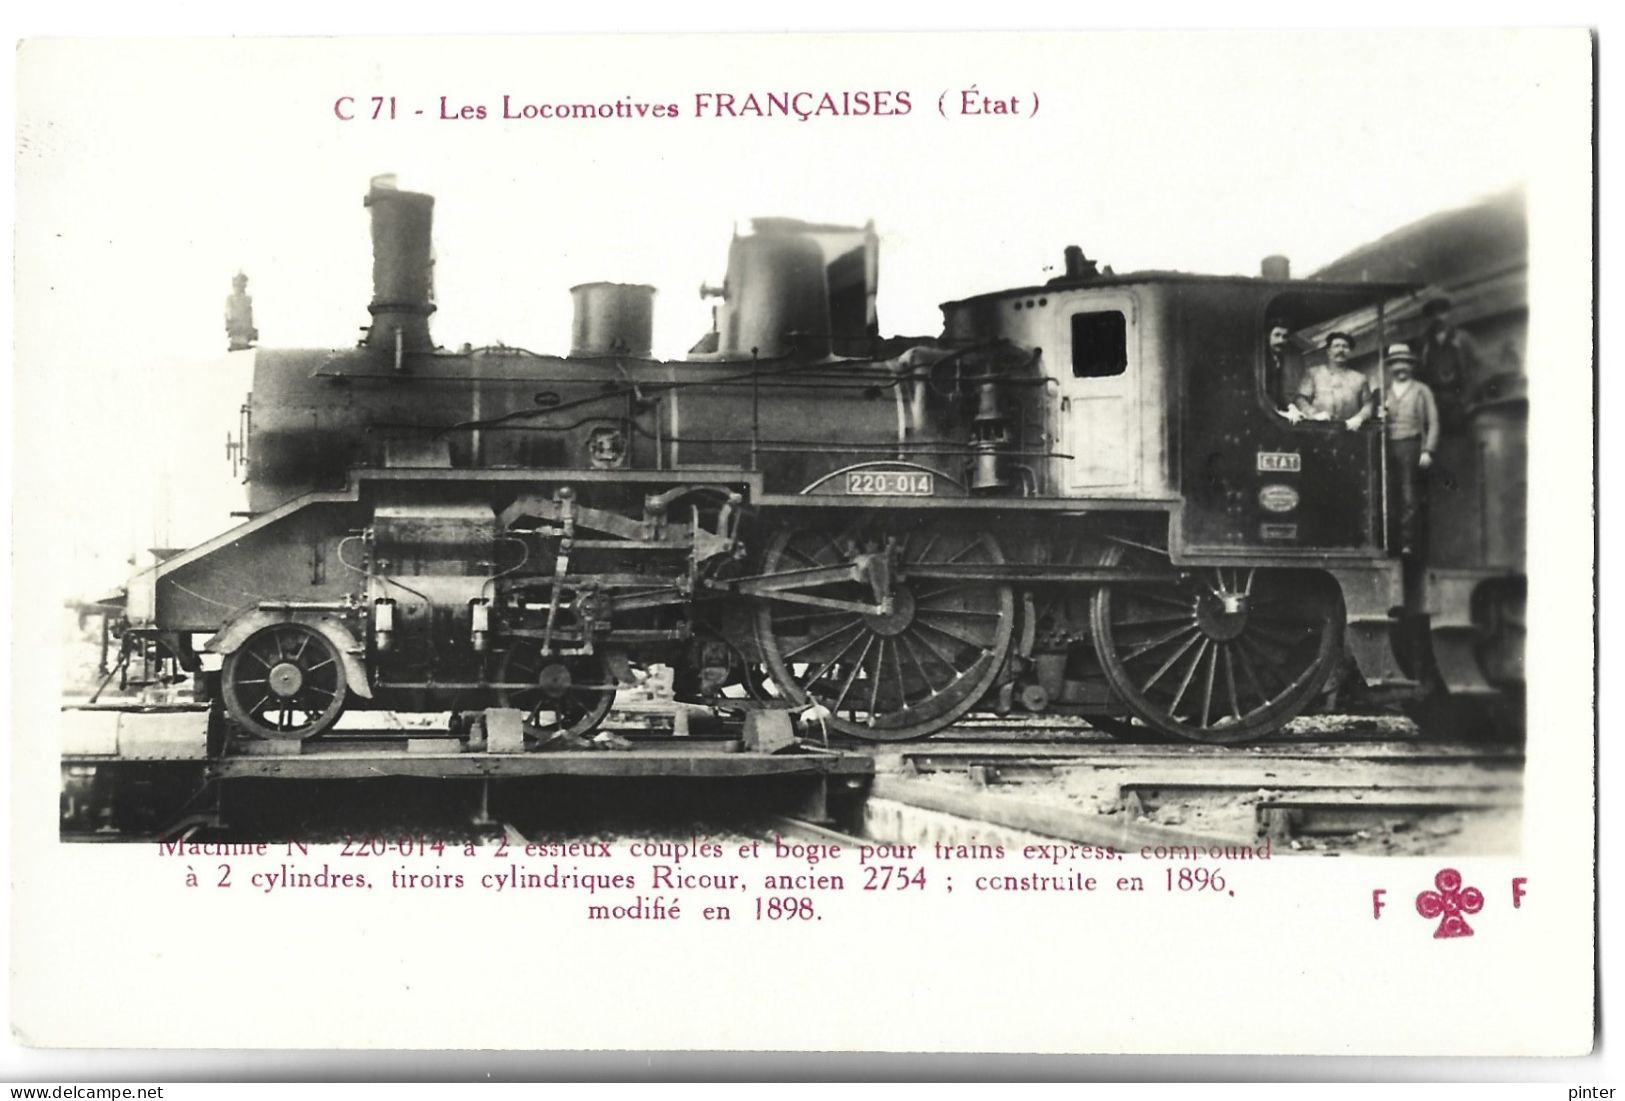 TRAIN - LES LOCOMOTIVES FRANCAISES (Etat) - Machine N° 220-014 - Trains